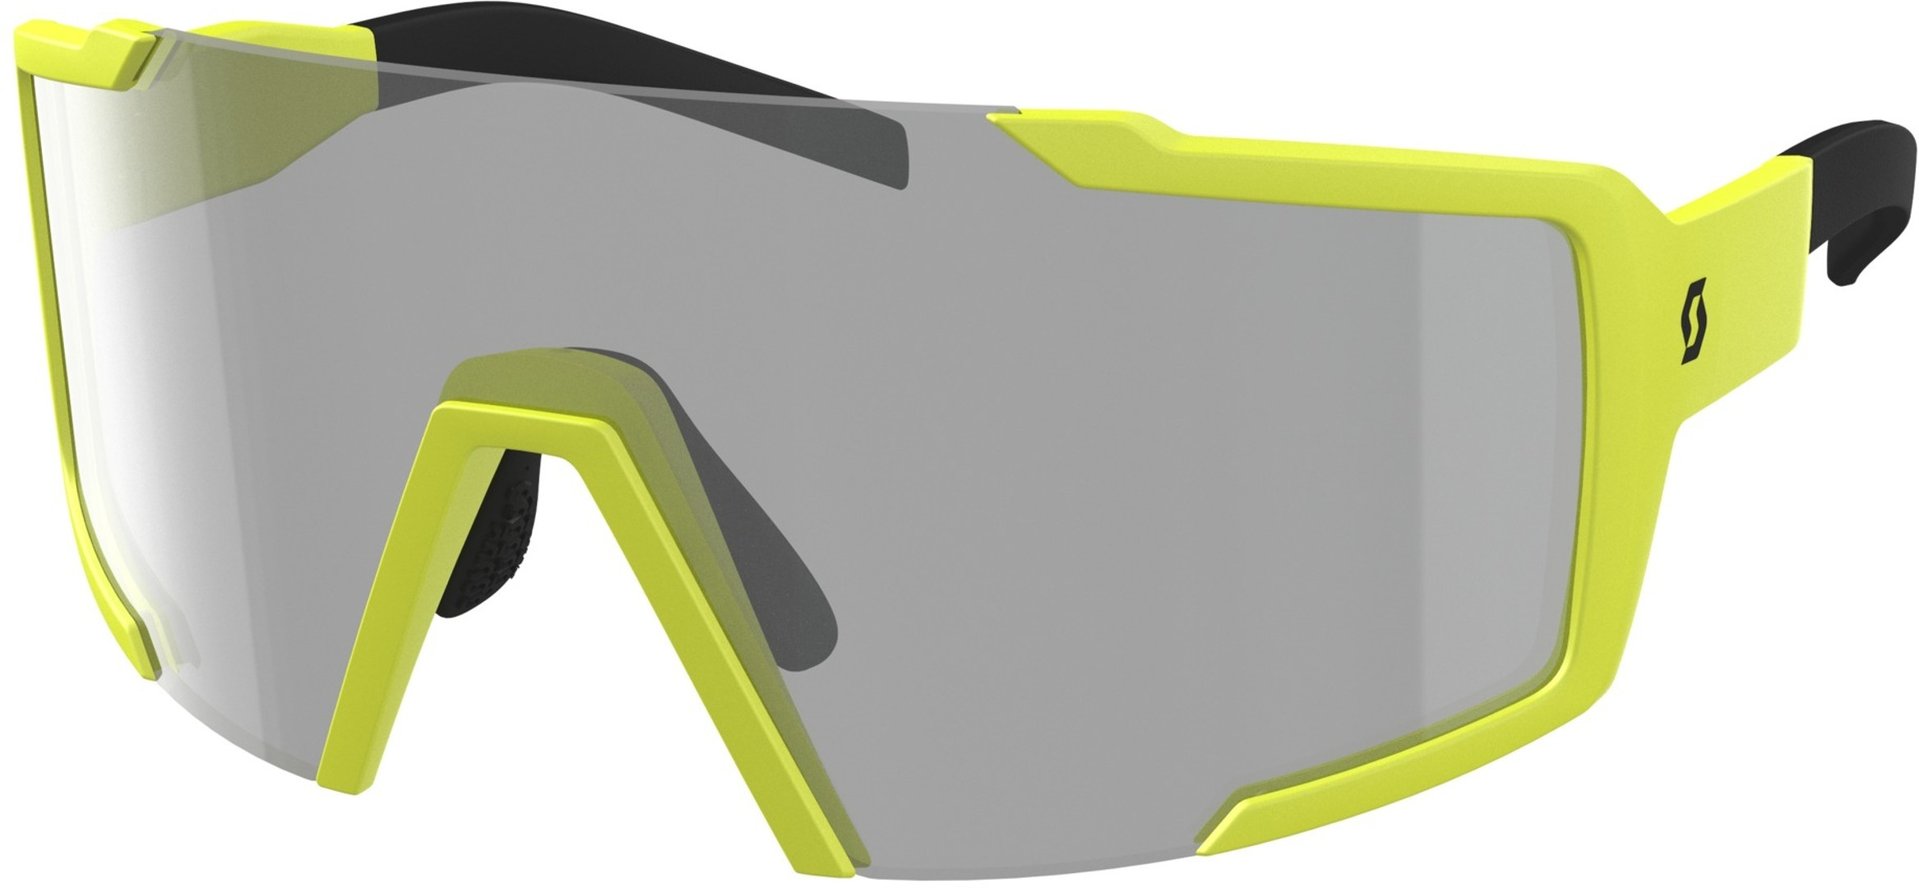 солнцезащитные очки bs черный серый Солнцезащитные очки Scott Shield LS с регулируемой носовой накладкой, желтый/серый